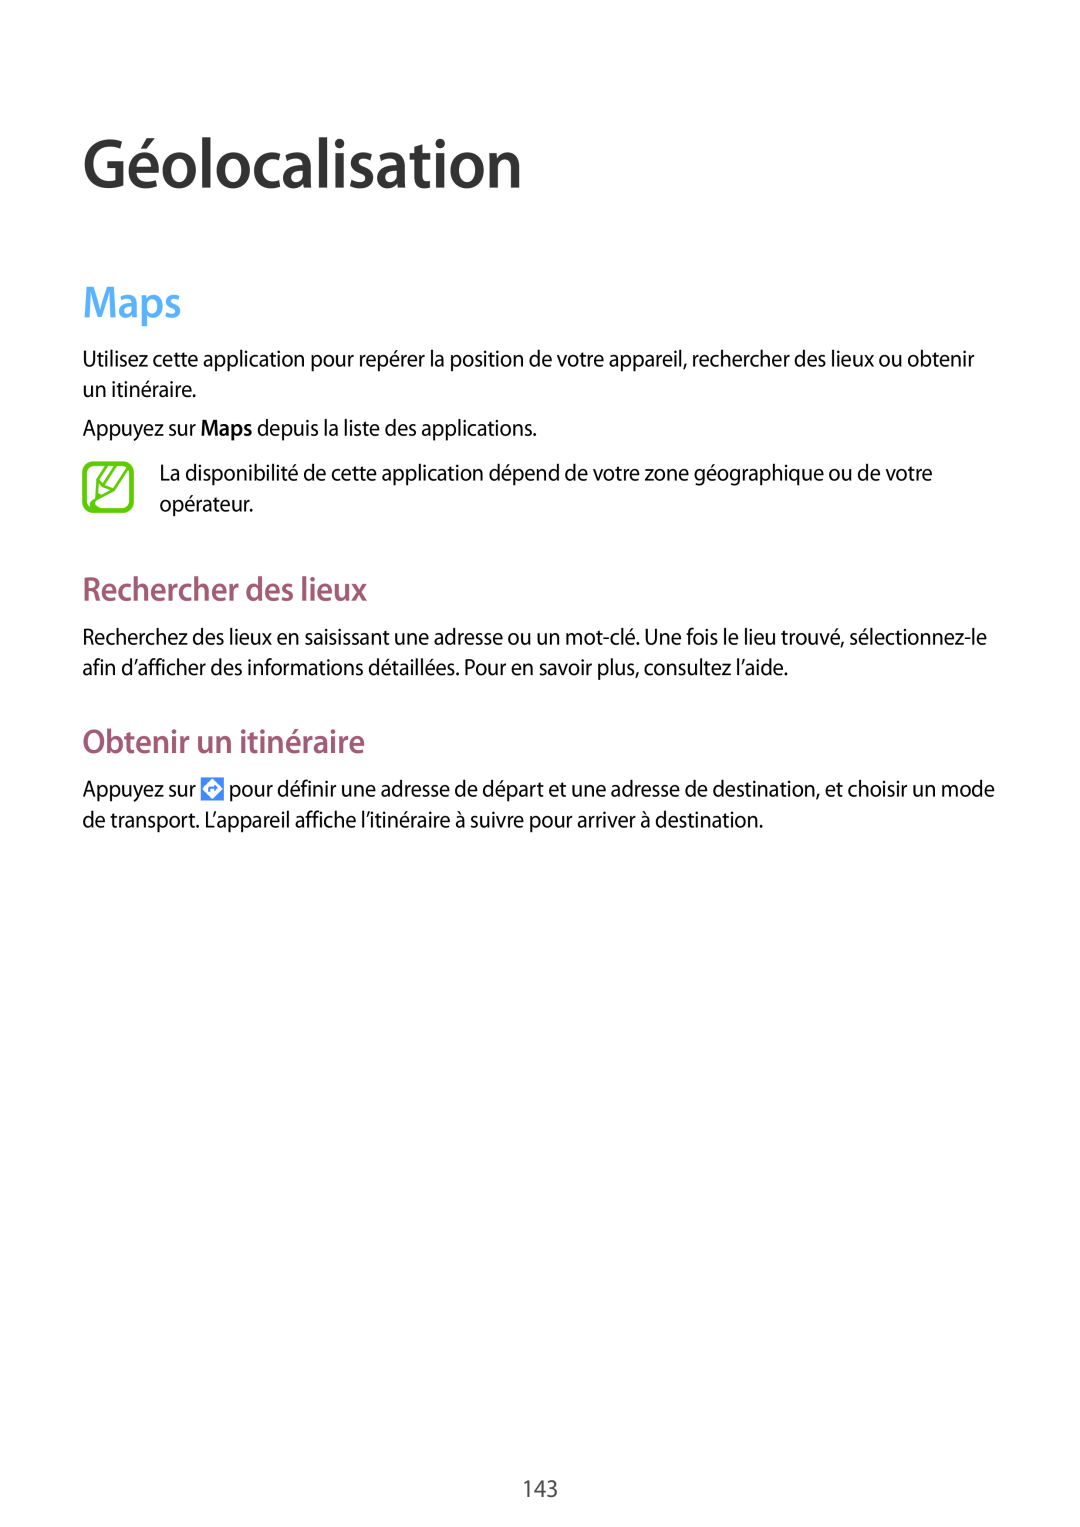 Samsung SM-P9050ZKAXEF, SM-P9050ZWAXEF manual Géolocalisation, Maps, Rechercher des lieux, Obtenir un itinéraire 